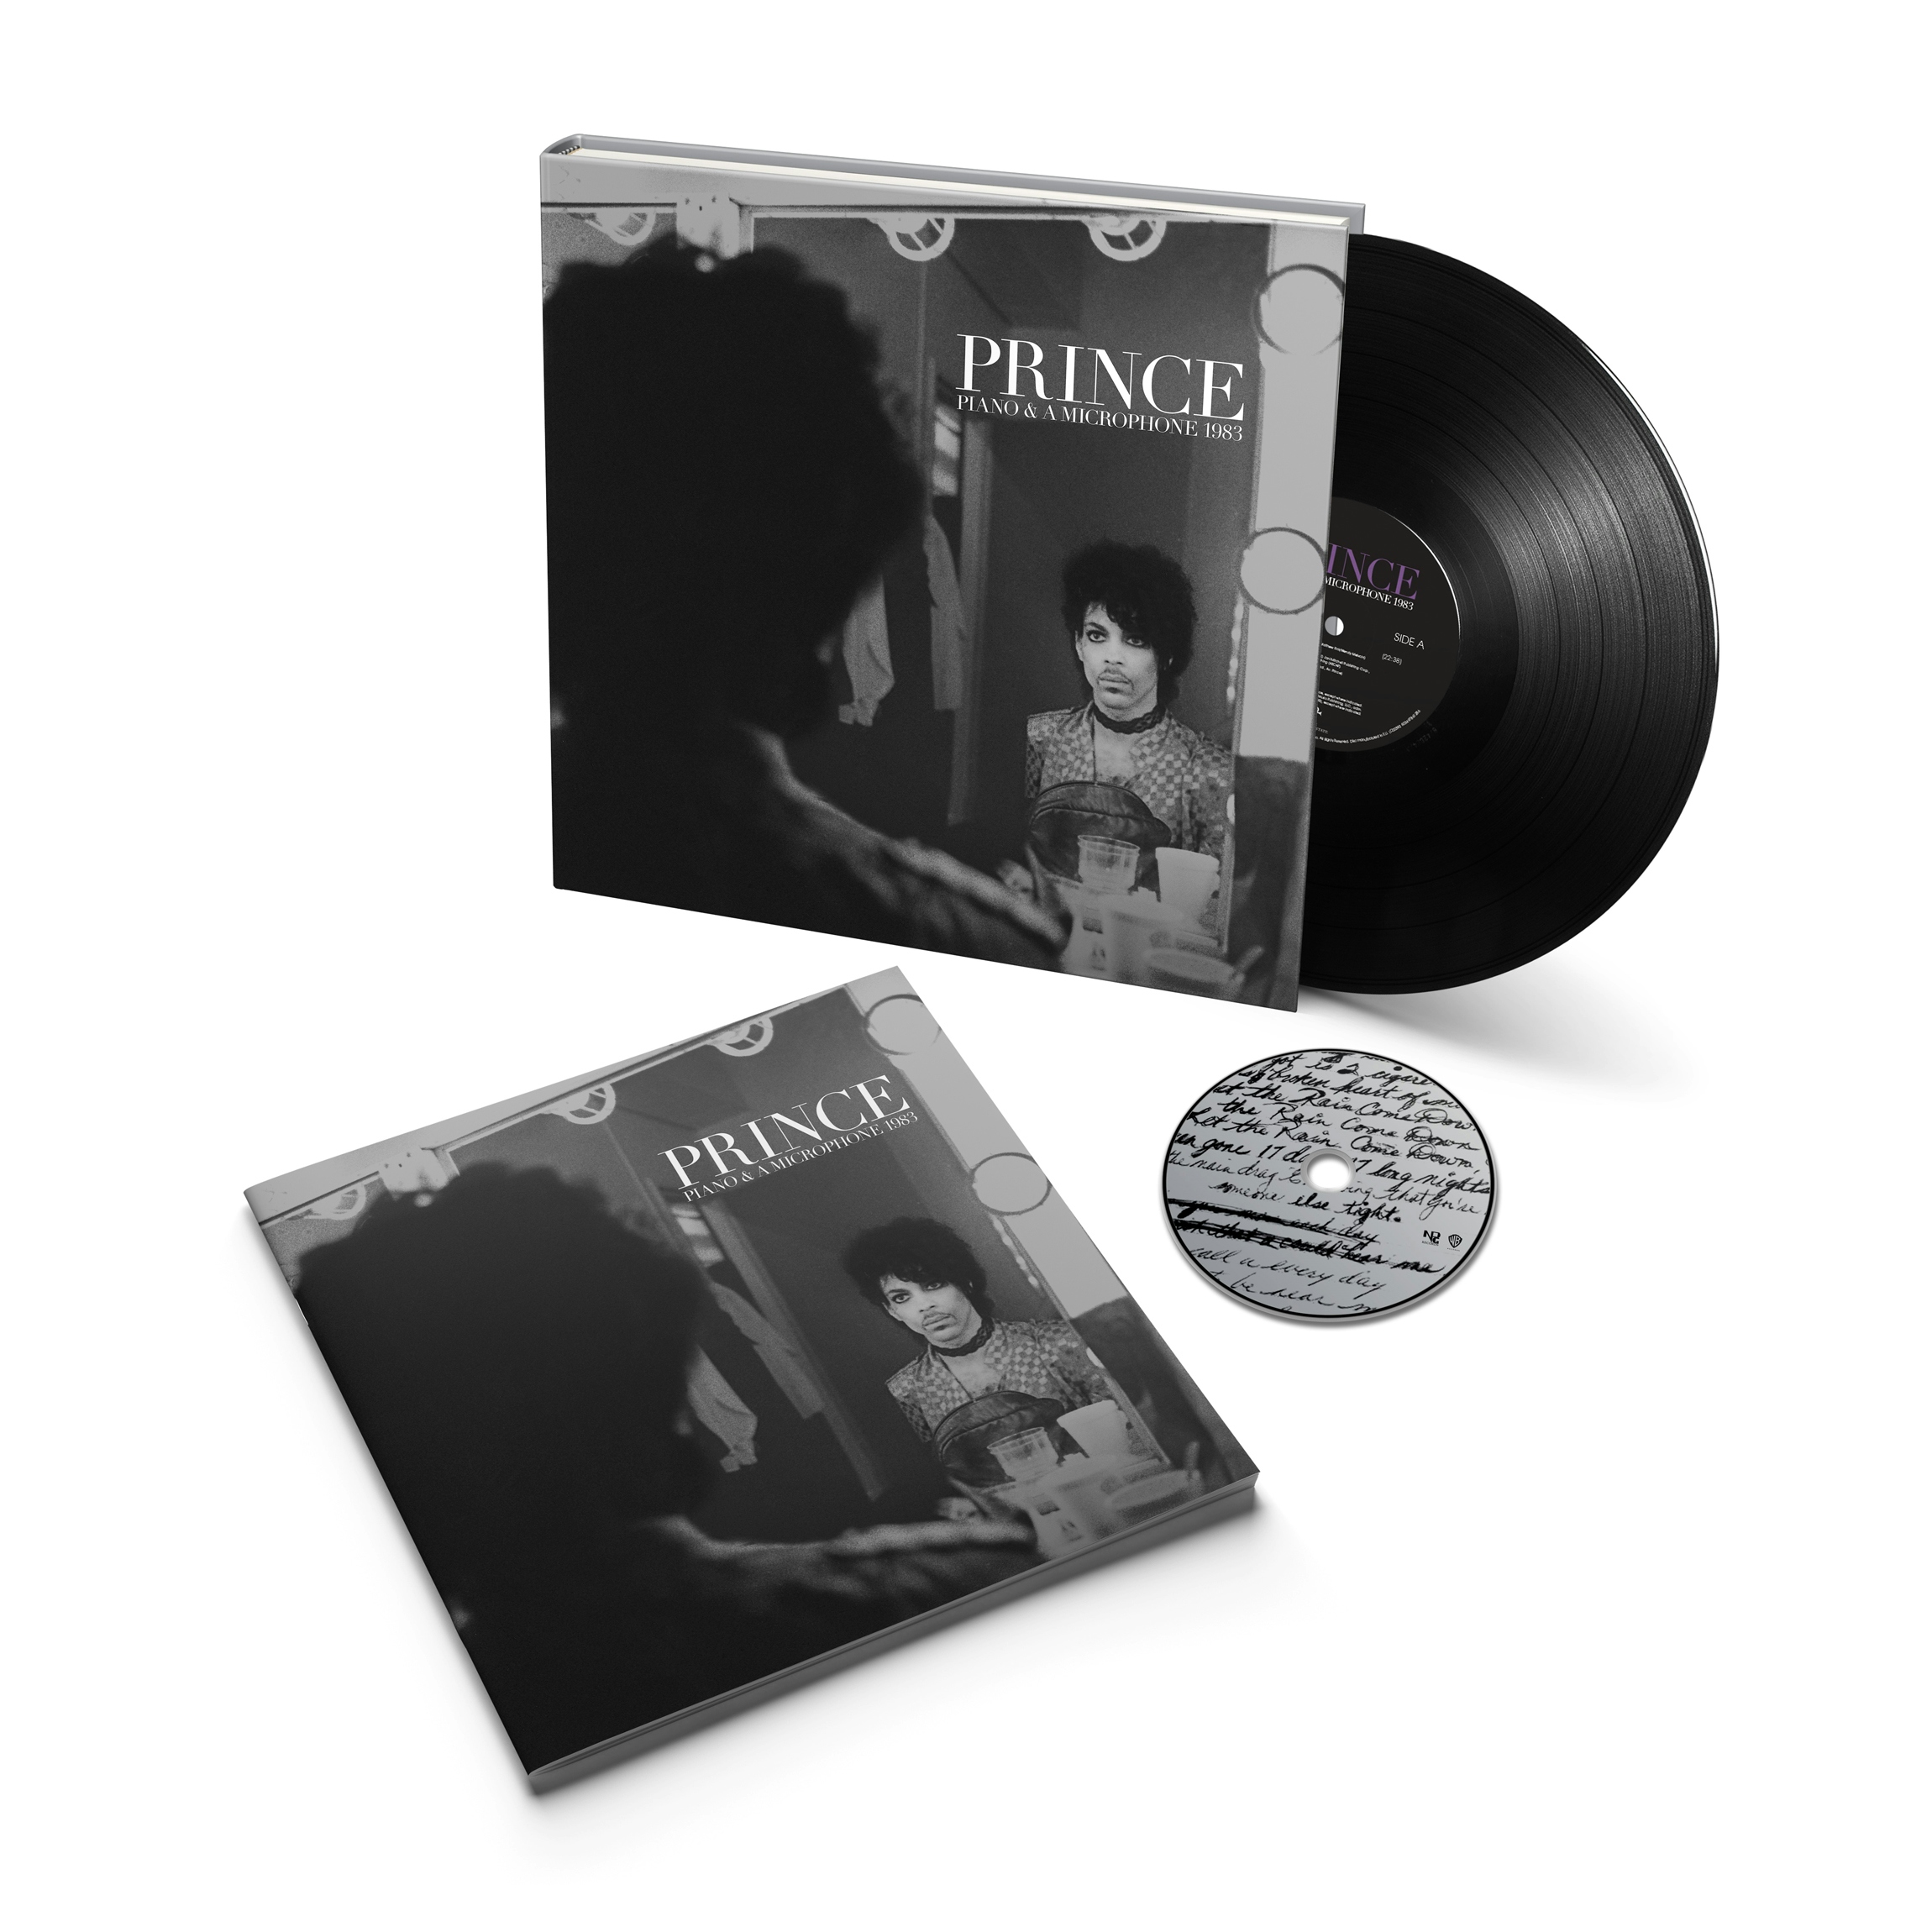 Album artwork for Album artwork for Piano and A Microphone 1983 by Prince by Piano and A Microphone 1983 - Prince